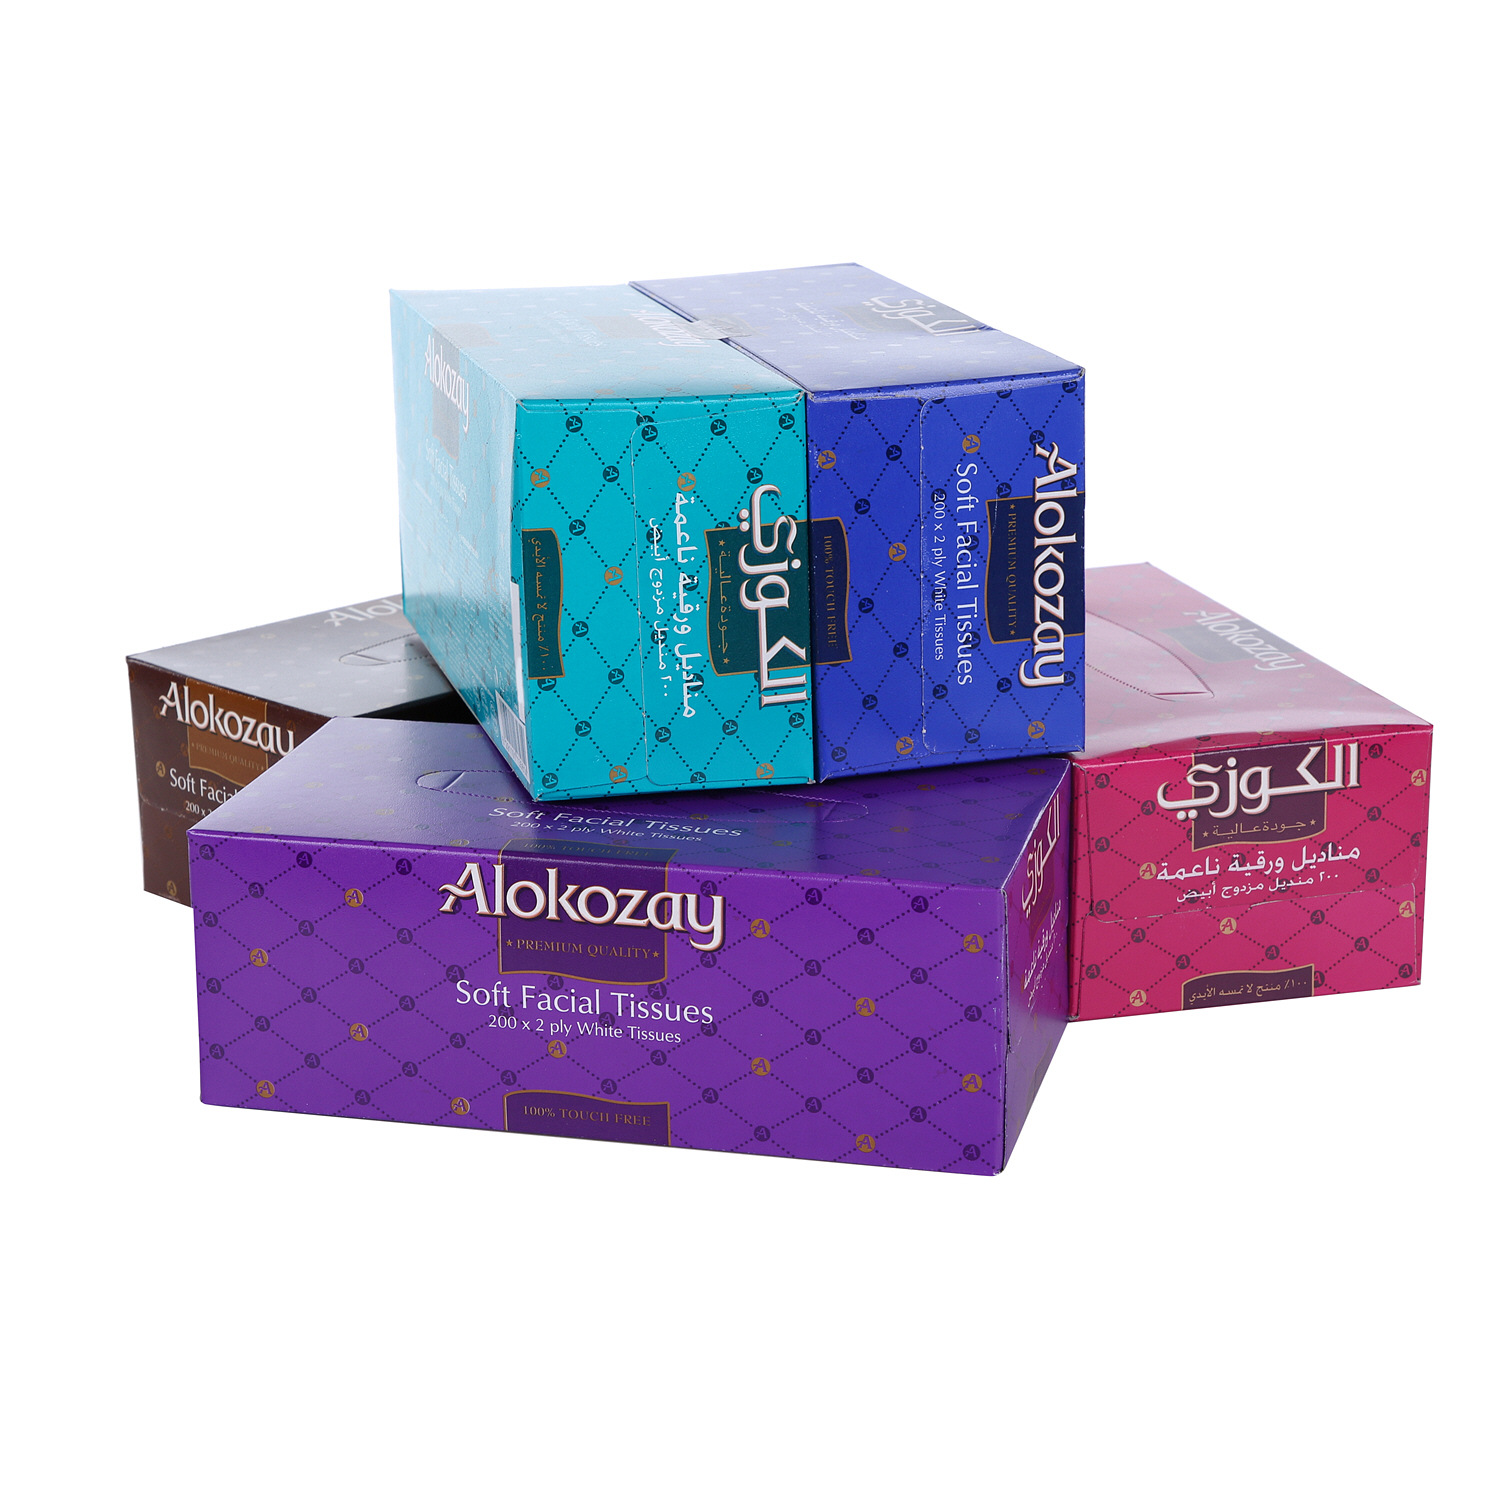 Alokozay Facial Tissue 200 x 5 Pack